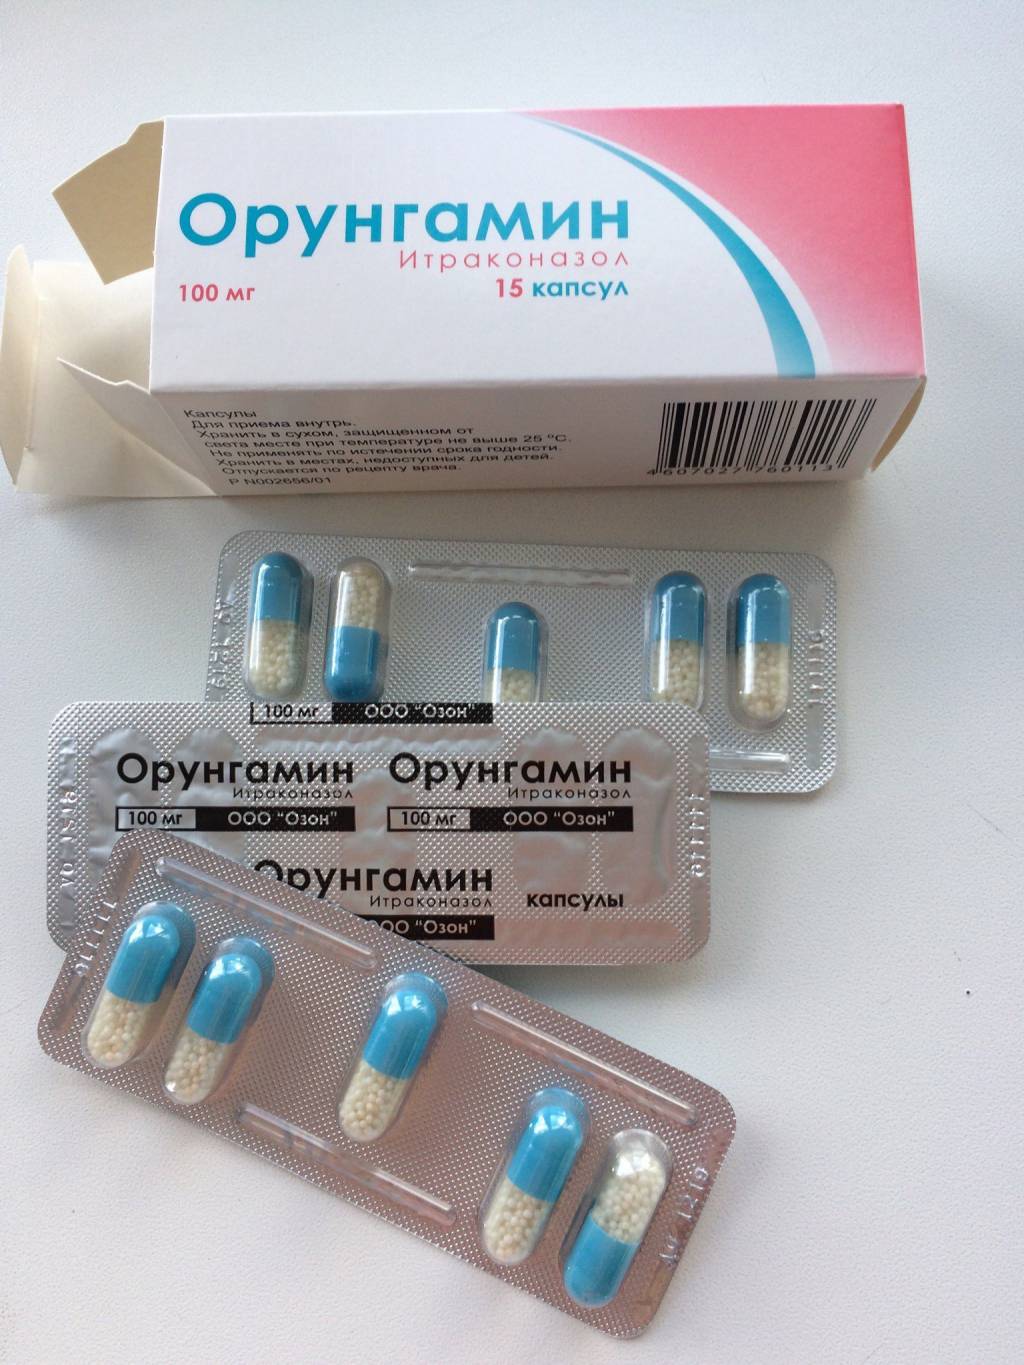 Орунгамин — инструкция по применению, описание, вопросы по препарату